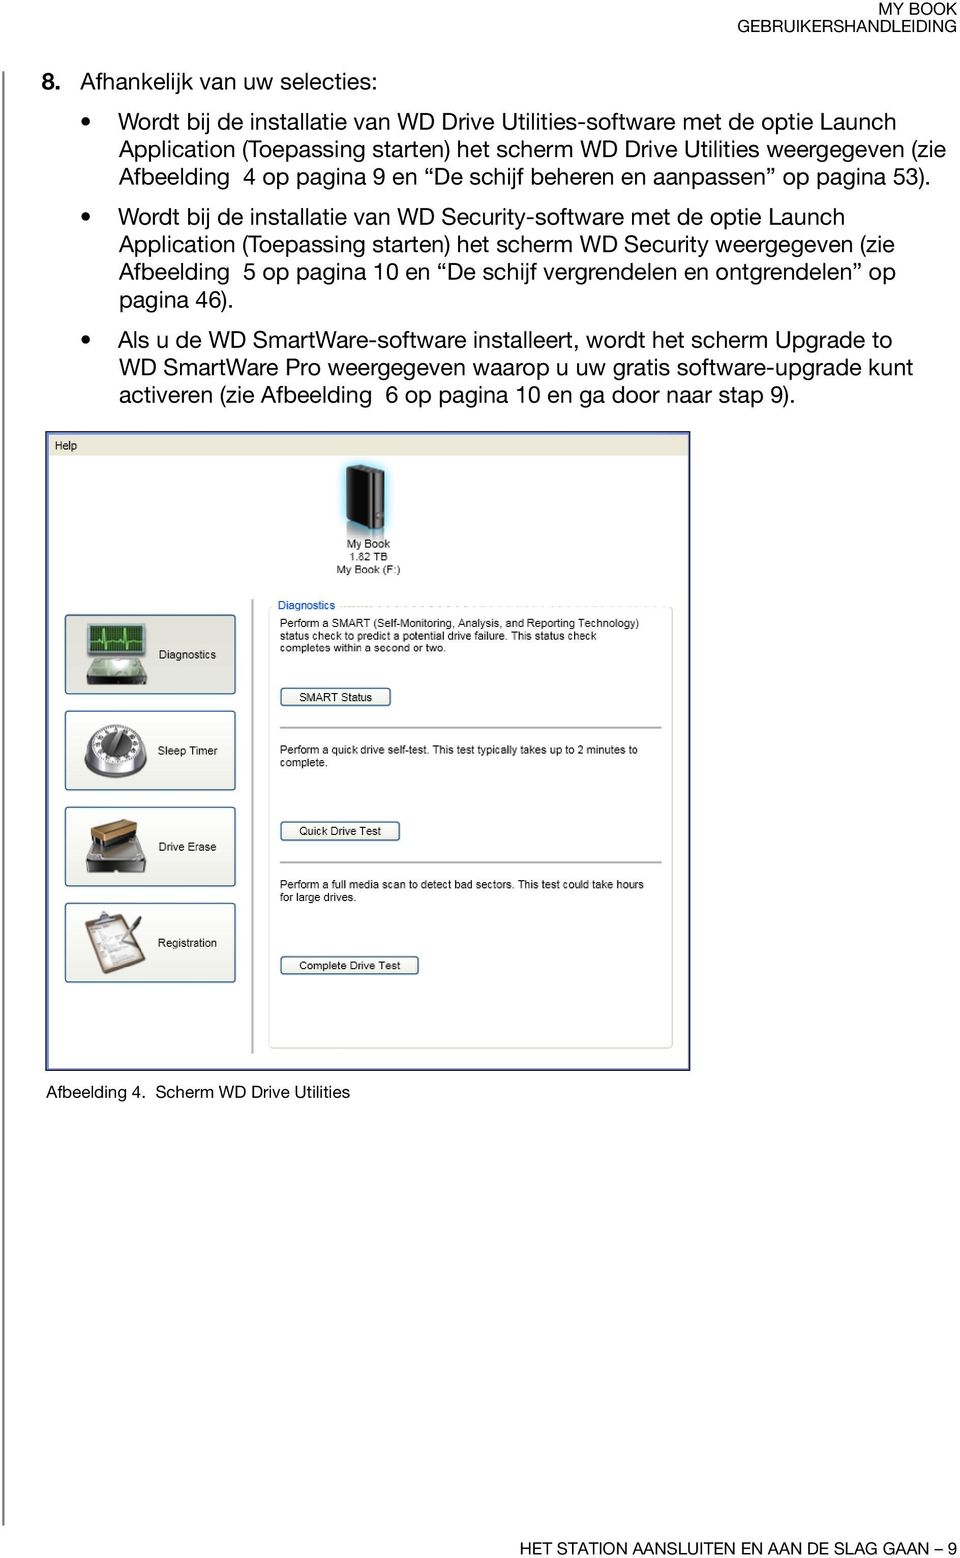 Wordt bij de installatie van WD Security-software met de optie Launch Application (Toepassing starten) het scherm WD Security weergegeven (zie Afbeelding 5 op pagina 10 en De schijf vergrendelen